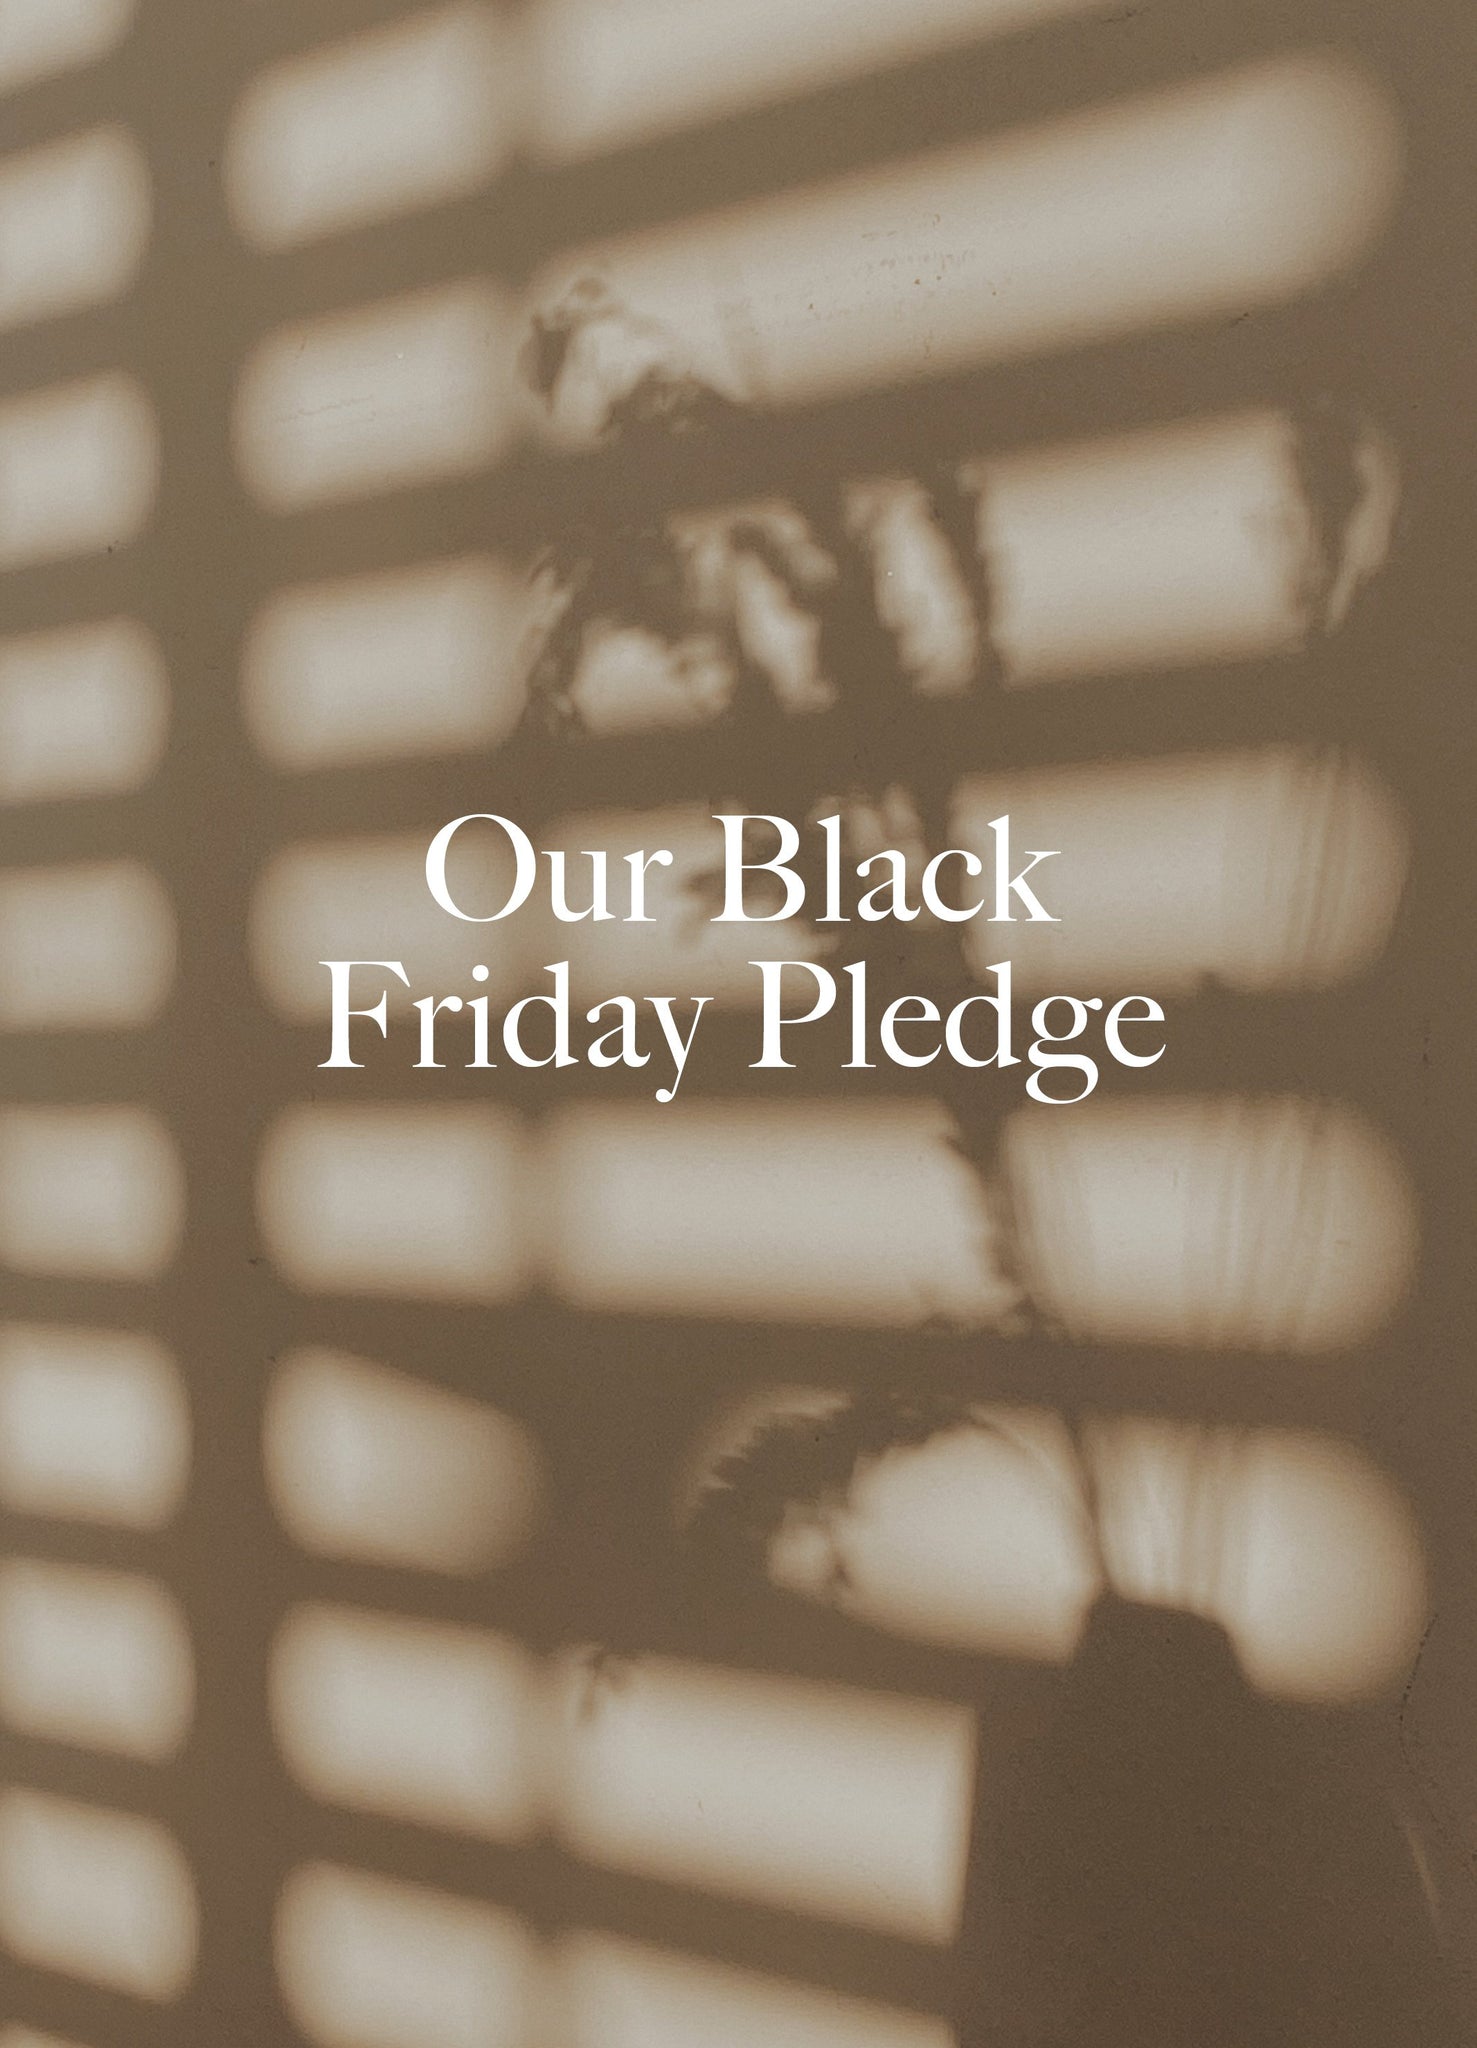 Stories-Our Black Friday Pledge - Dora Larsen | Colourful Lingerie